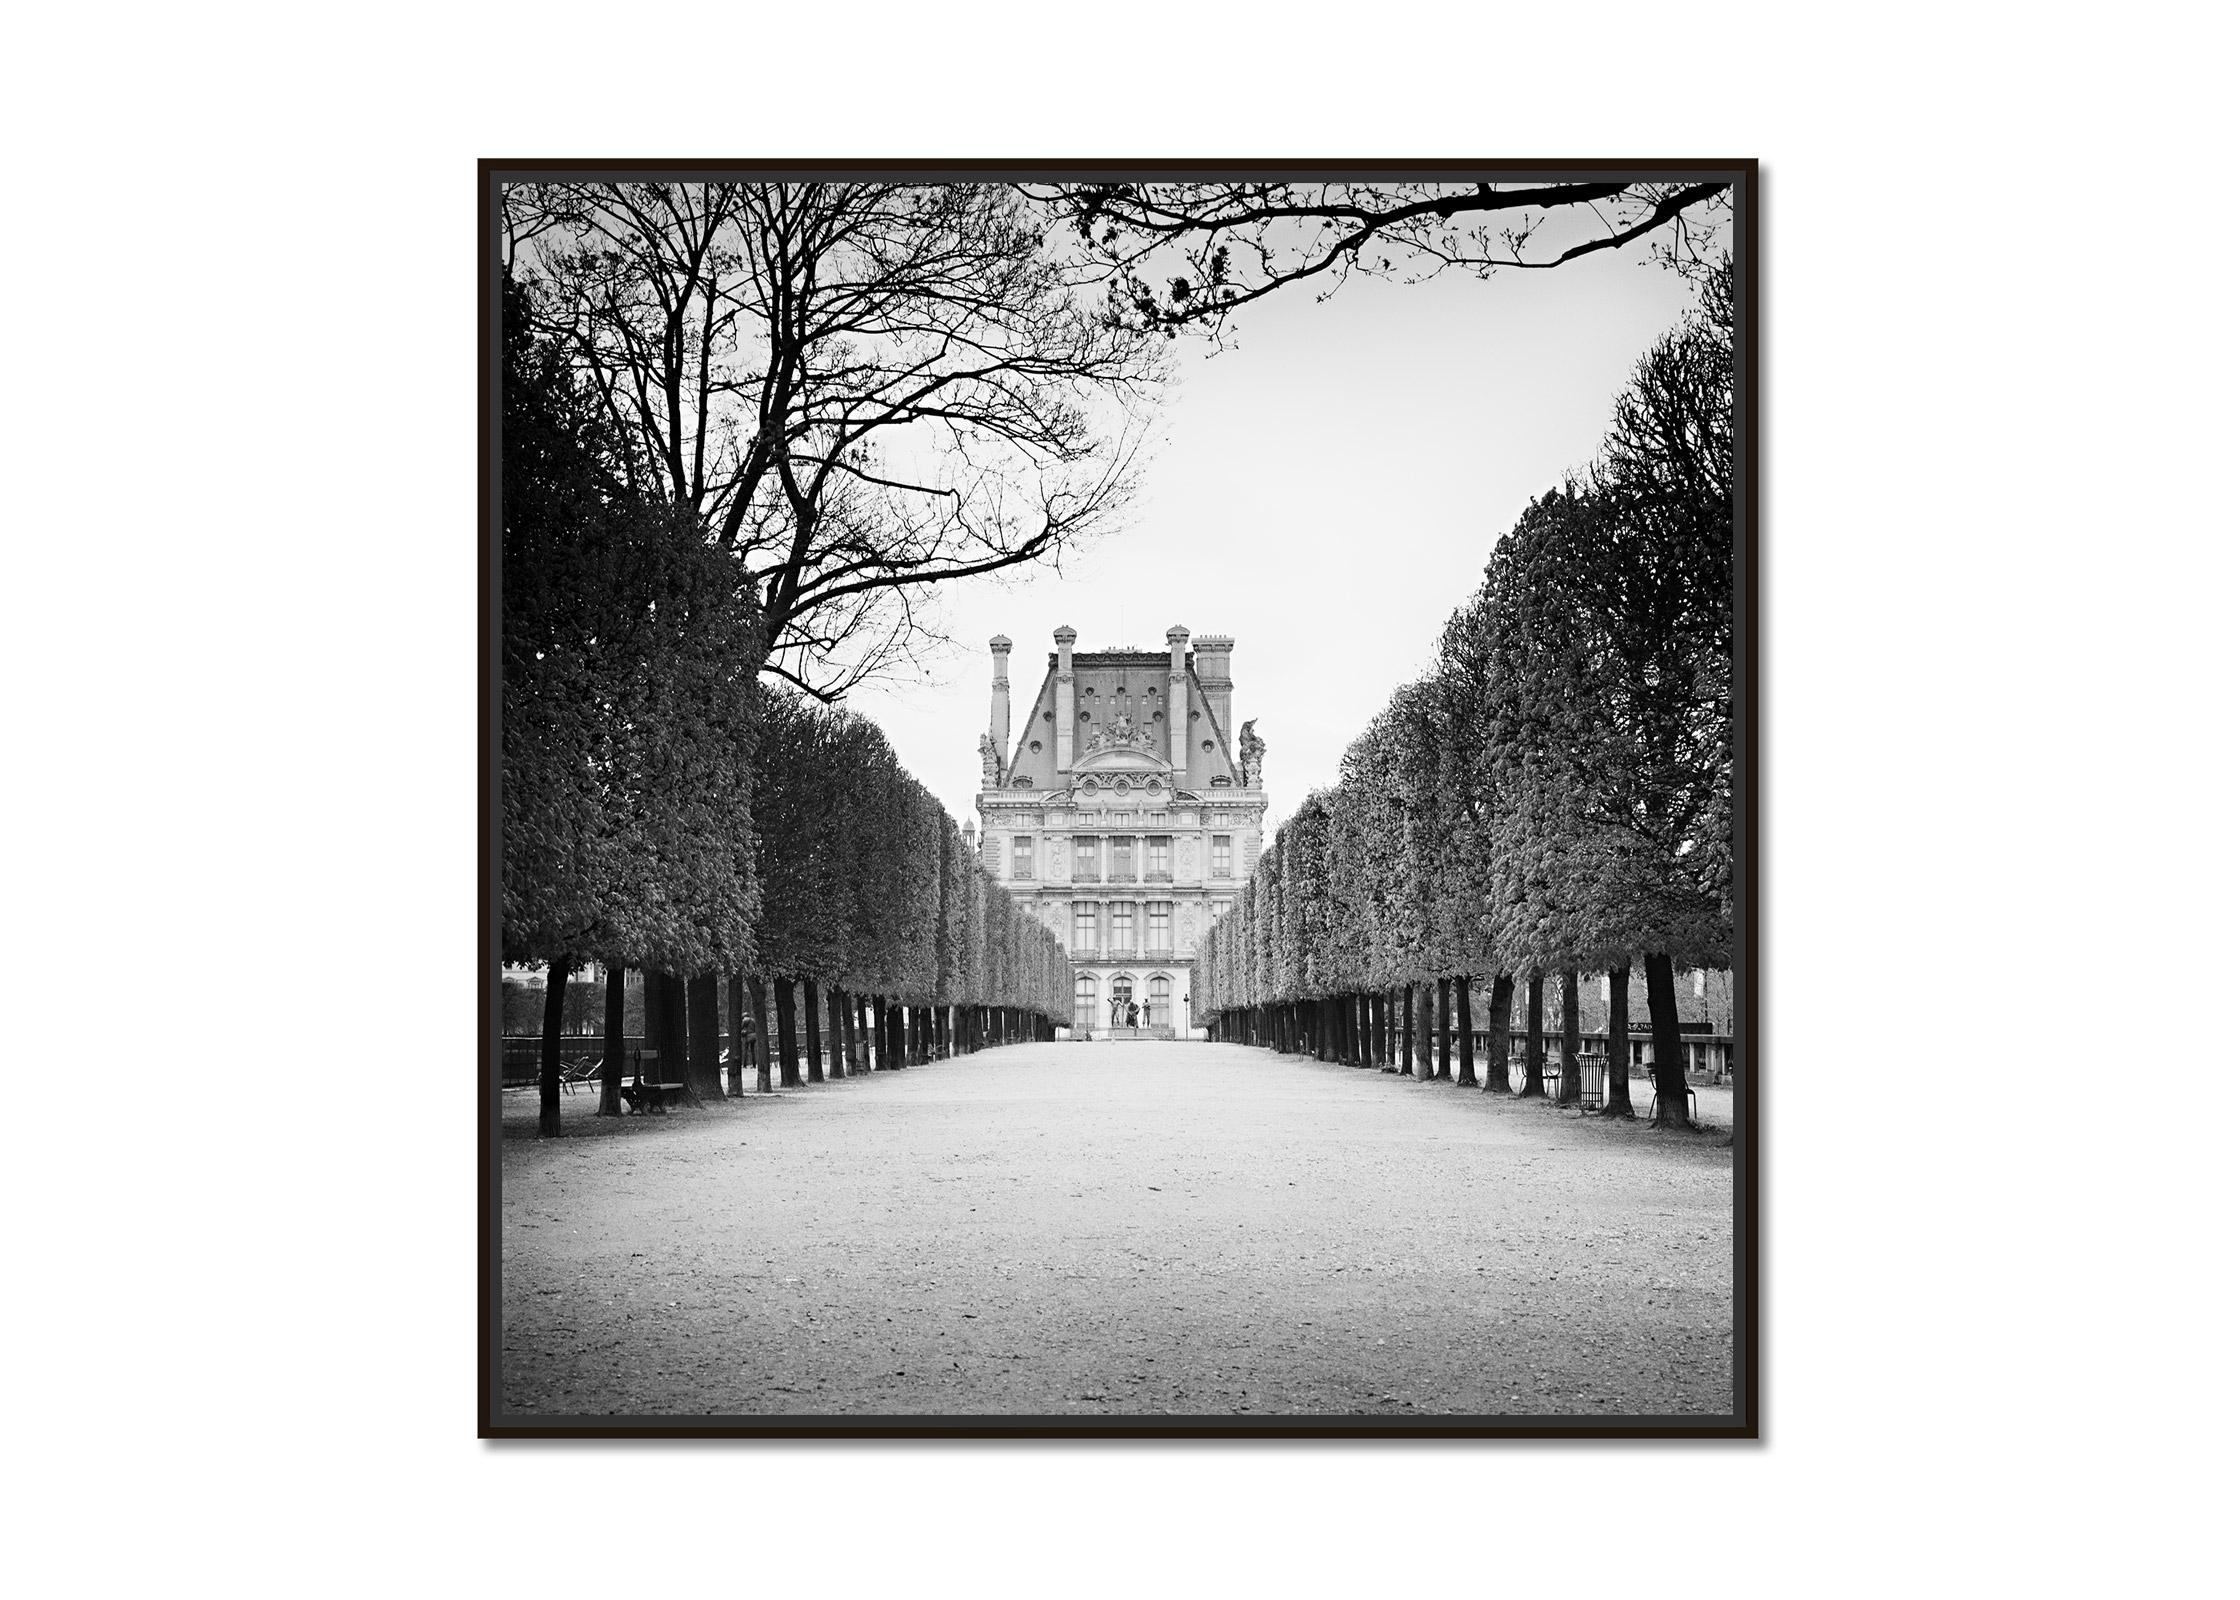 Pavillon de Flore, Paris, France, black and white art photography, cityscape - Photograph by Gerald Berghammer